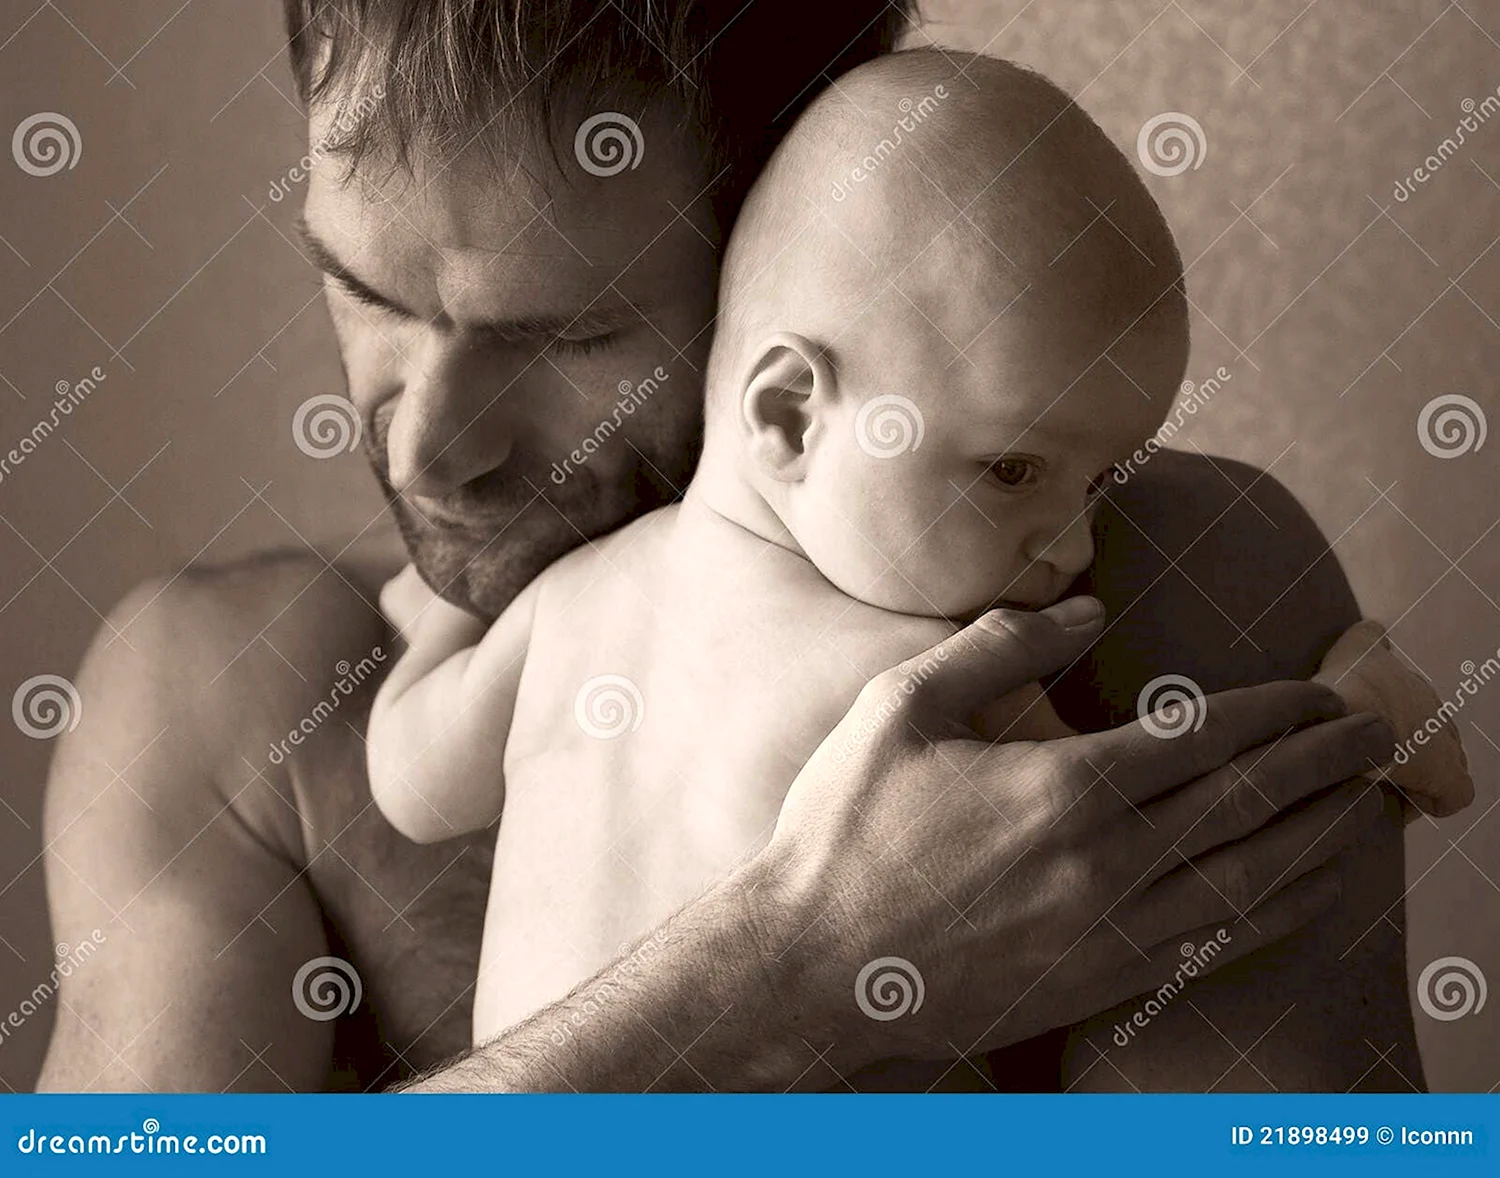 Мужчина с ребенком на руках